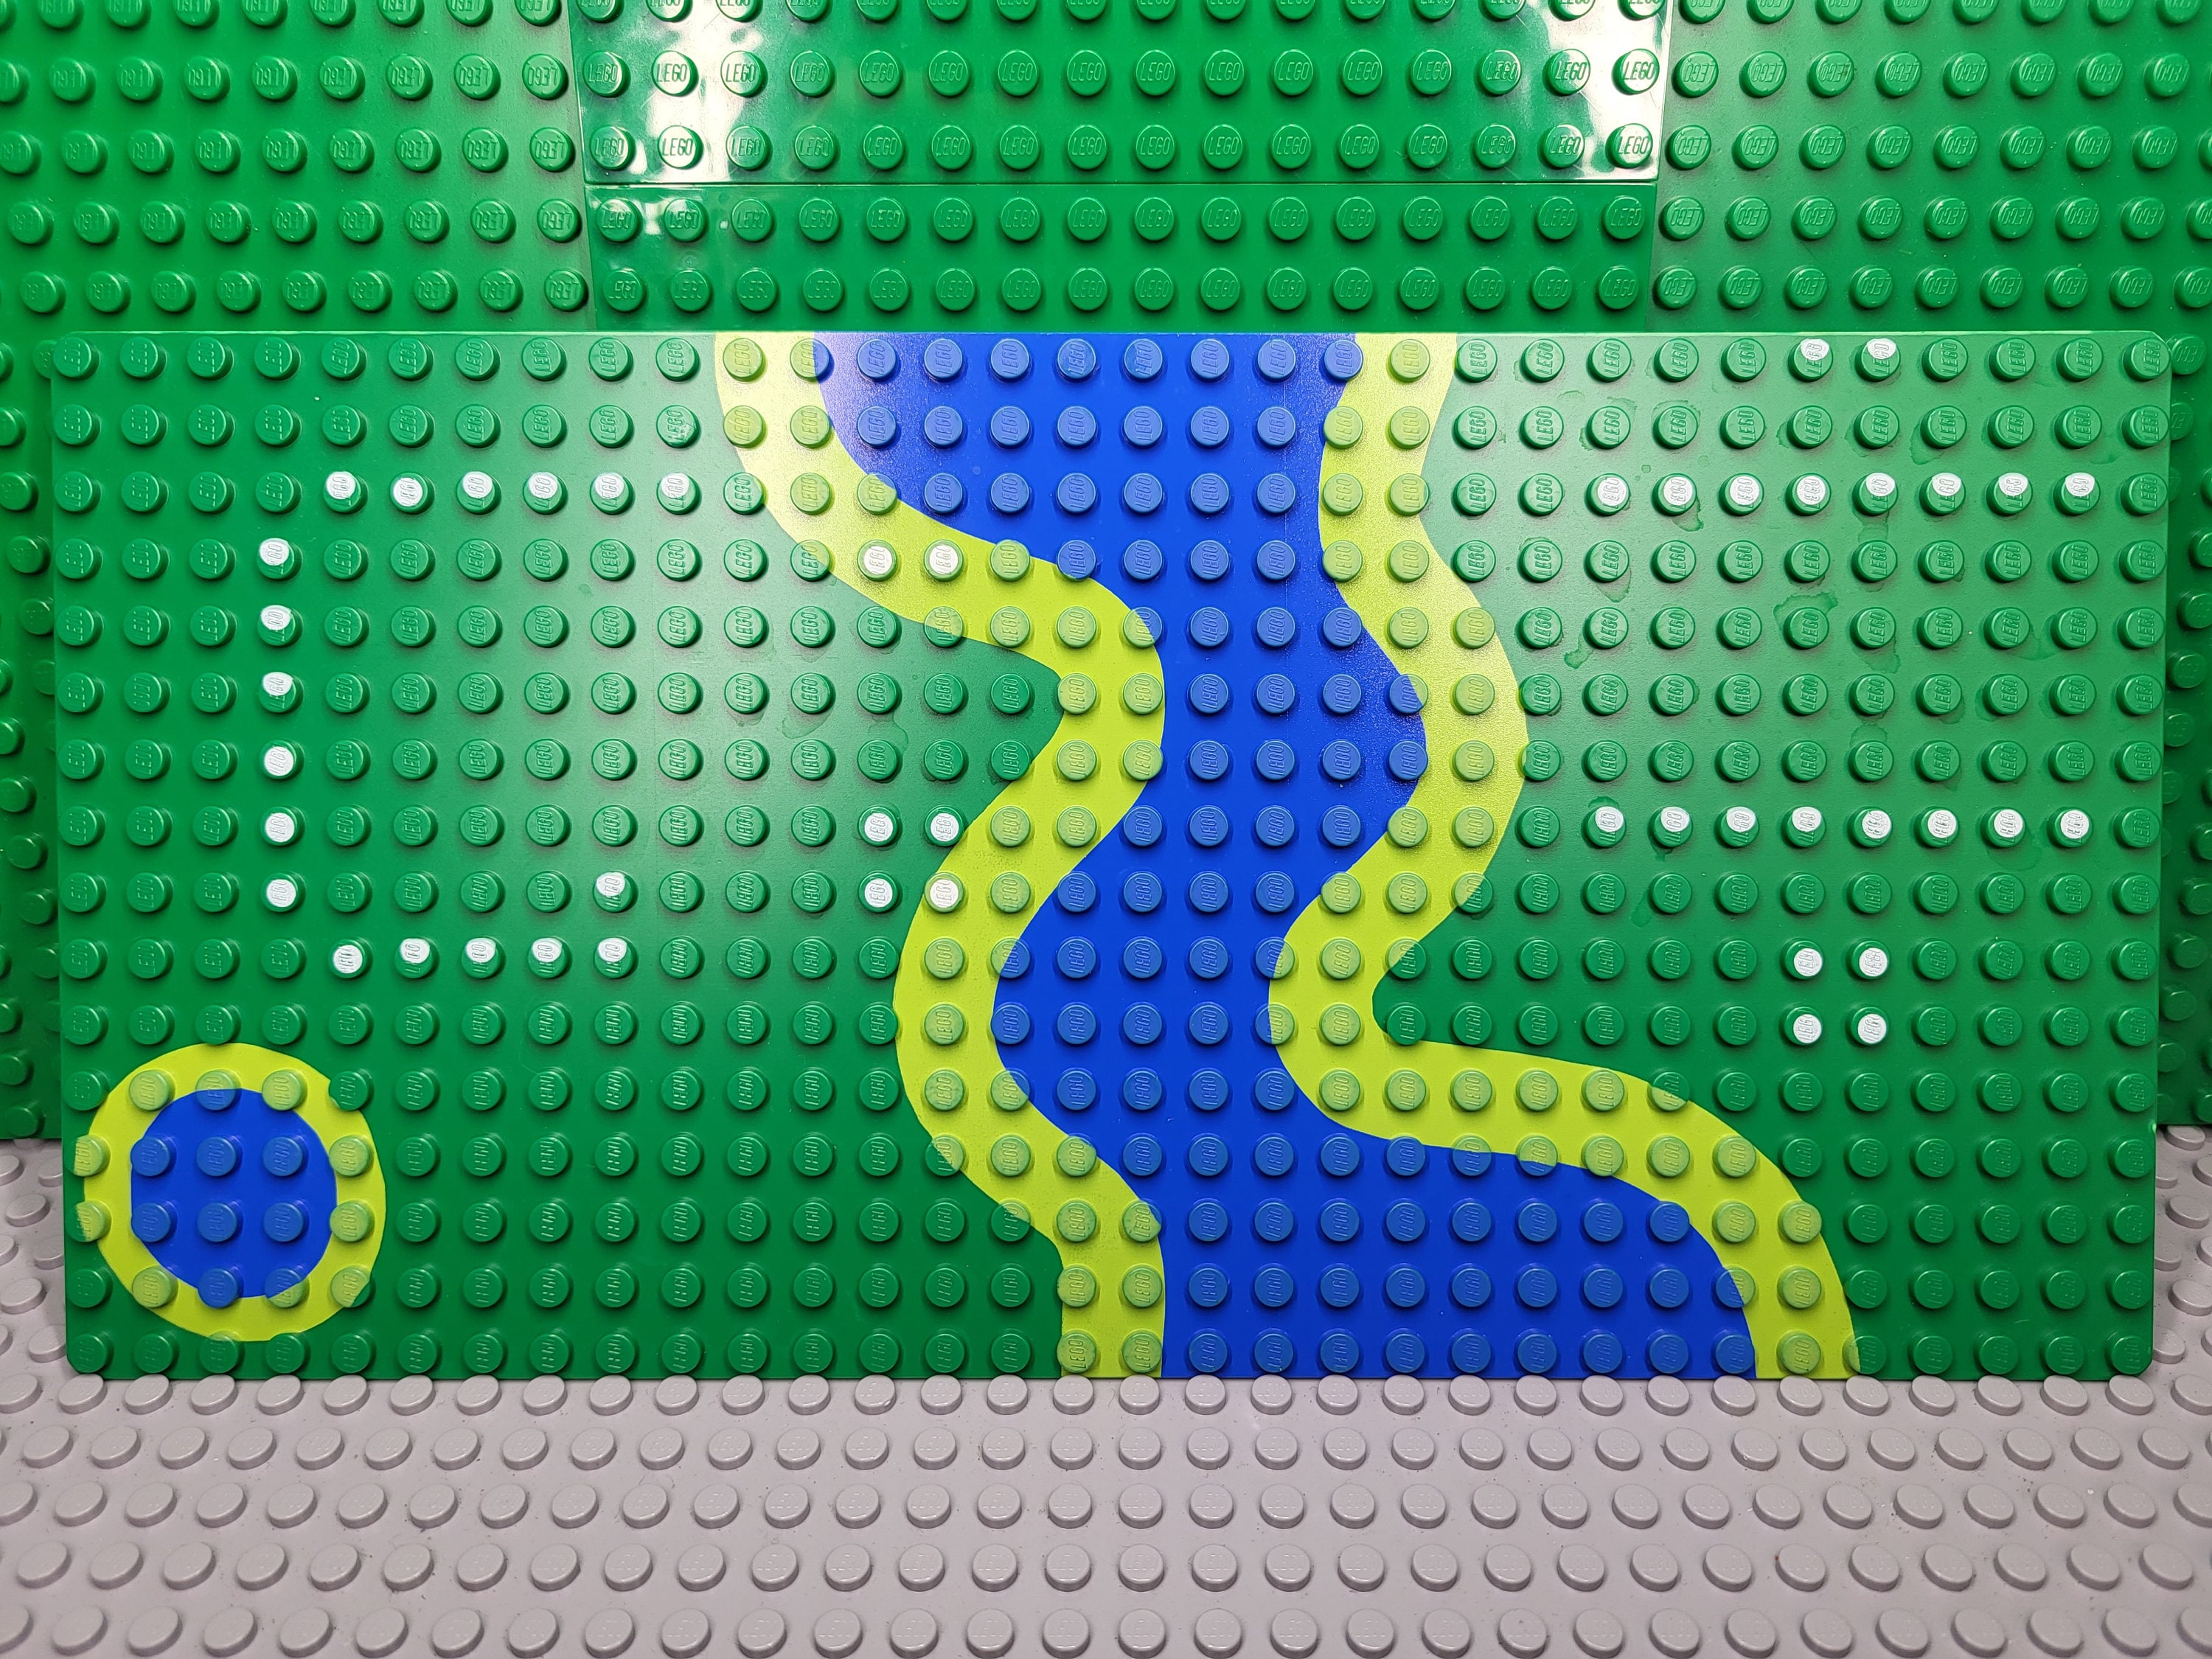 LEGO Plaque de Base 16 x 32 avec River from 6071 (2748)